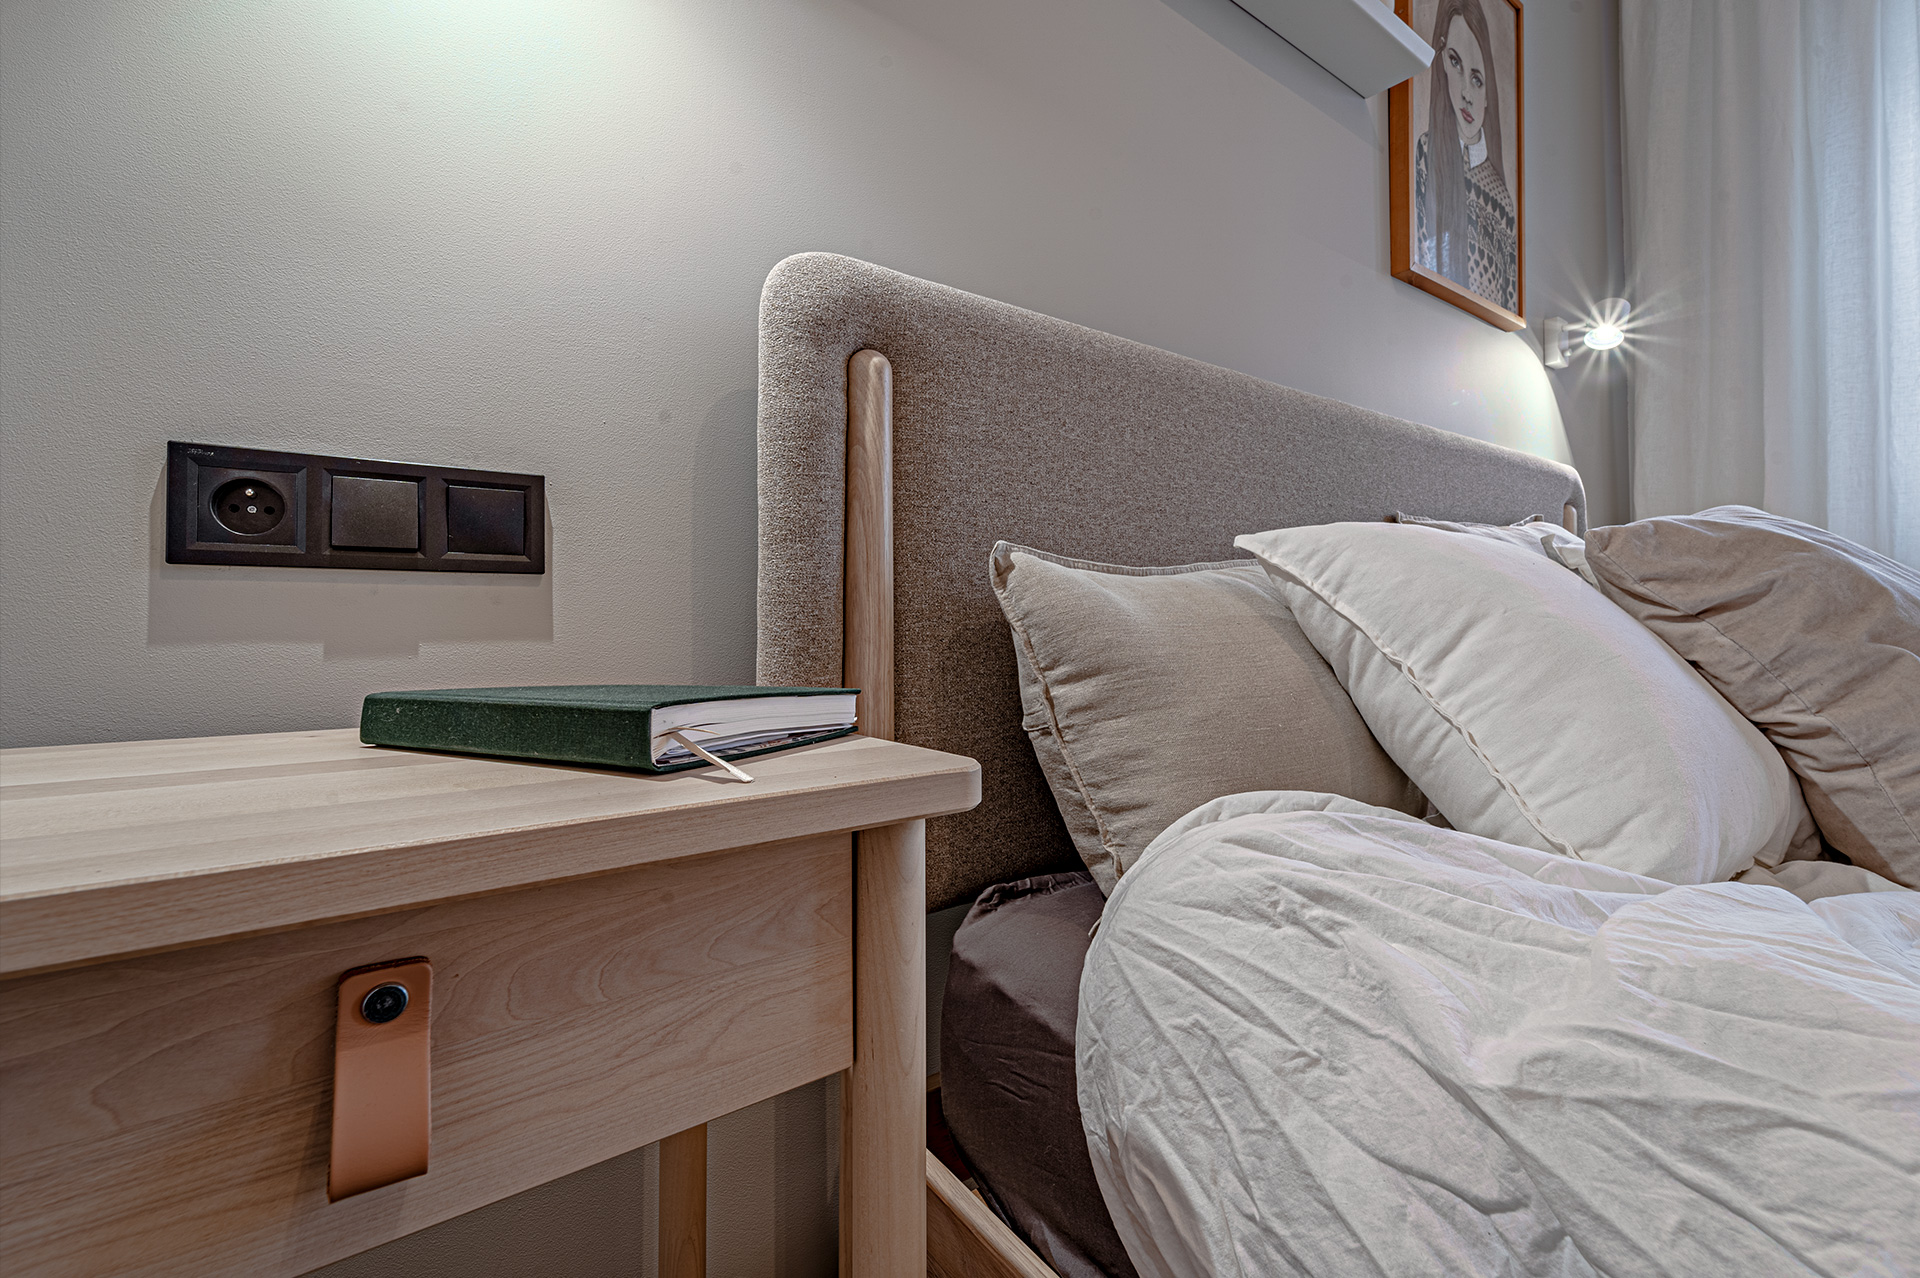 Łóżko z tapicerowanym zagłówkiem oraz drewniane stoliki nocne po obu stronach dodają wnętrzu ciepła i przytulności.